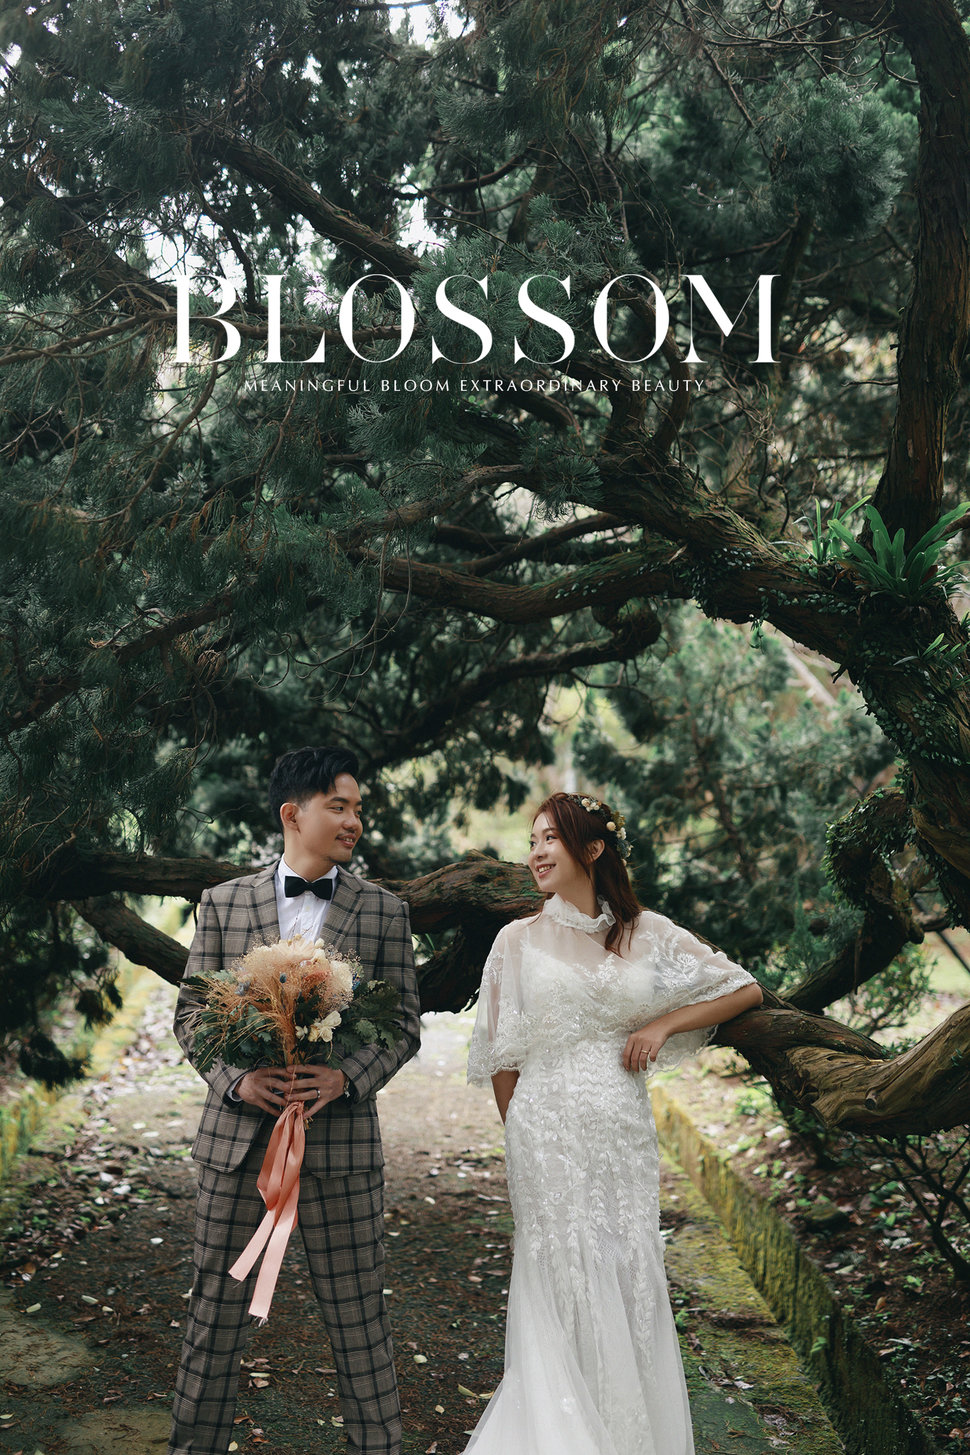 水花婚紗攝影工作室 Blossom Photoart Studio - 水花婚紗攝影工作室Blossom《結婚吧》